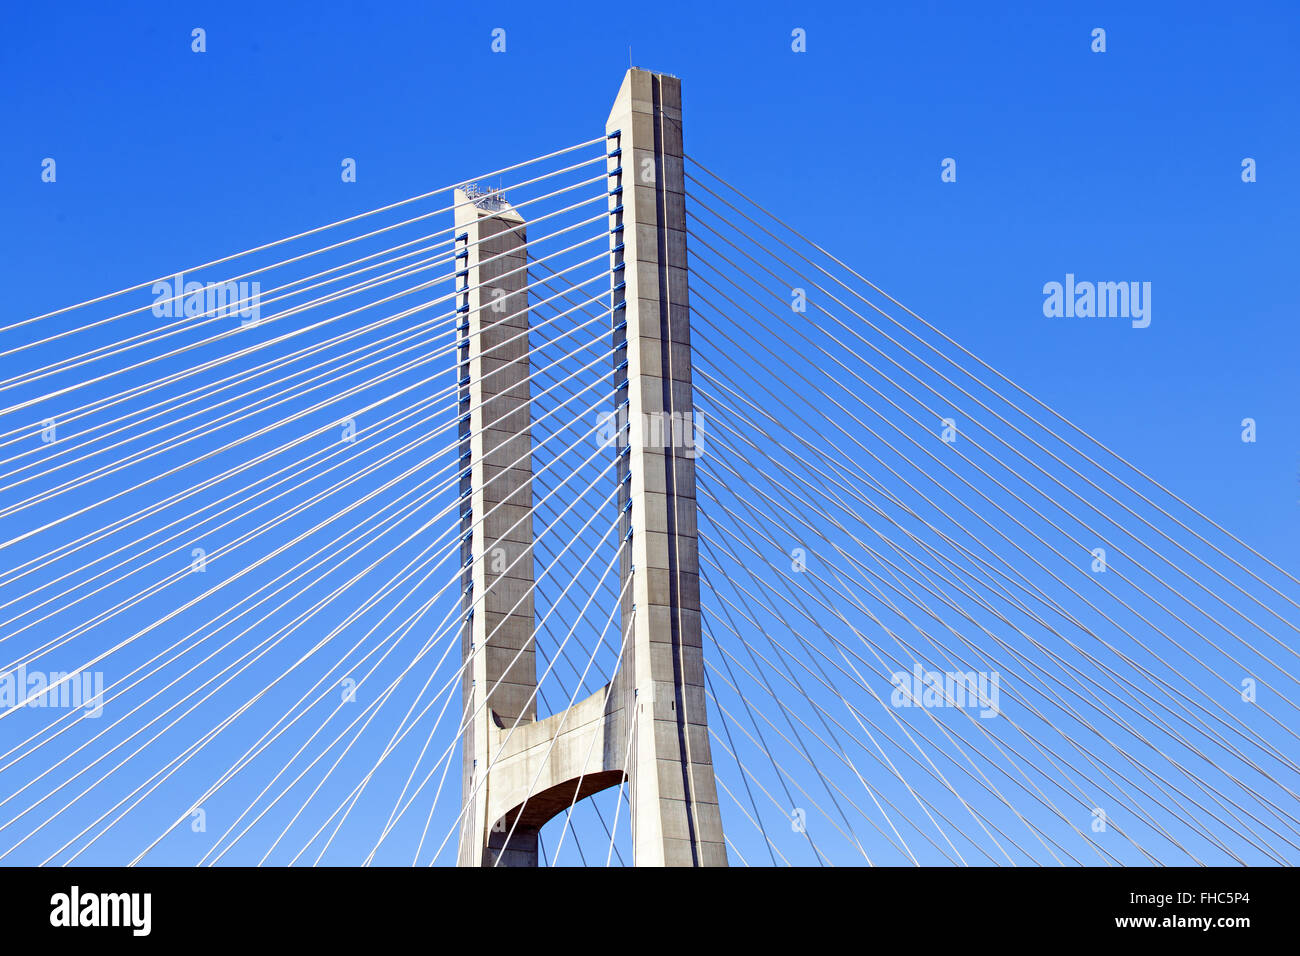 Dettaglio dal ponte Vasco da Gama a Lisbona Portogallo Foto Stock